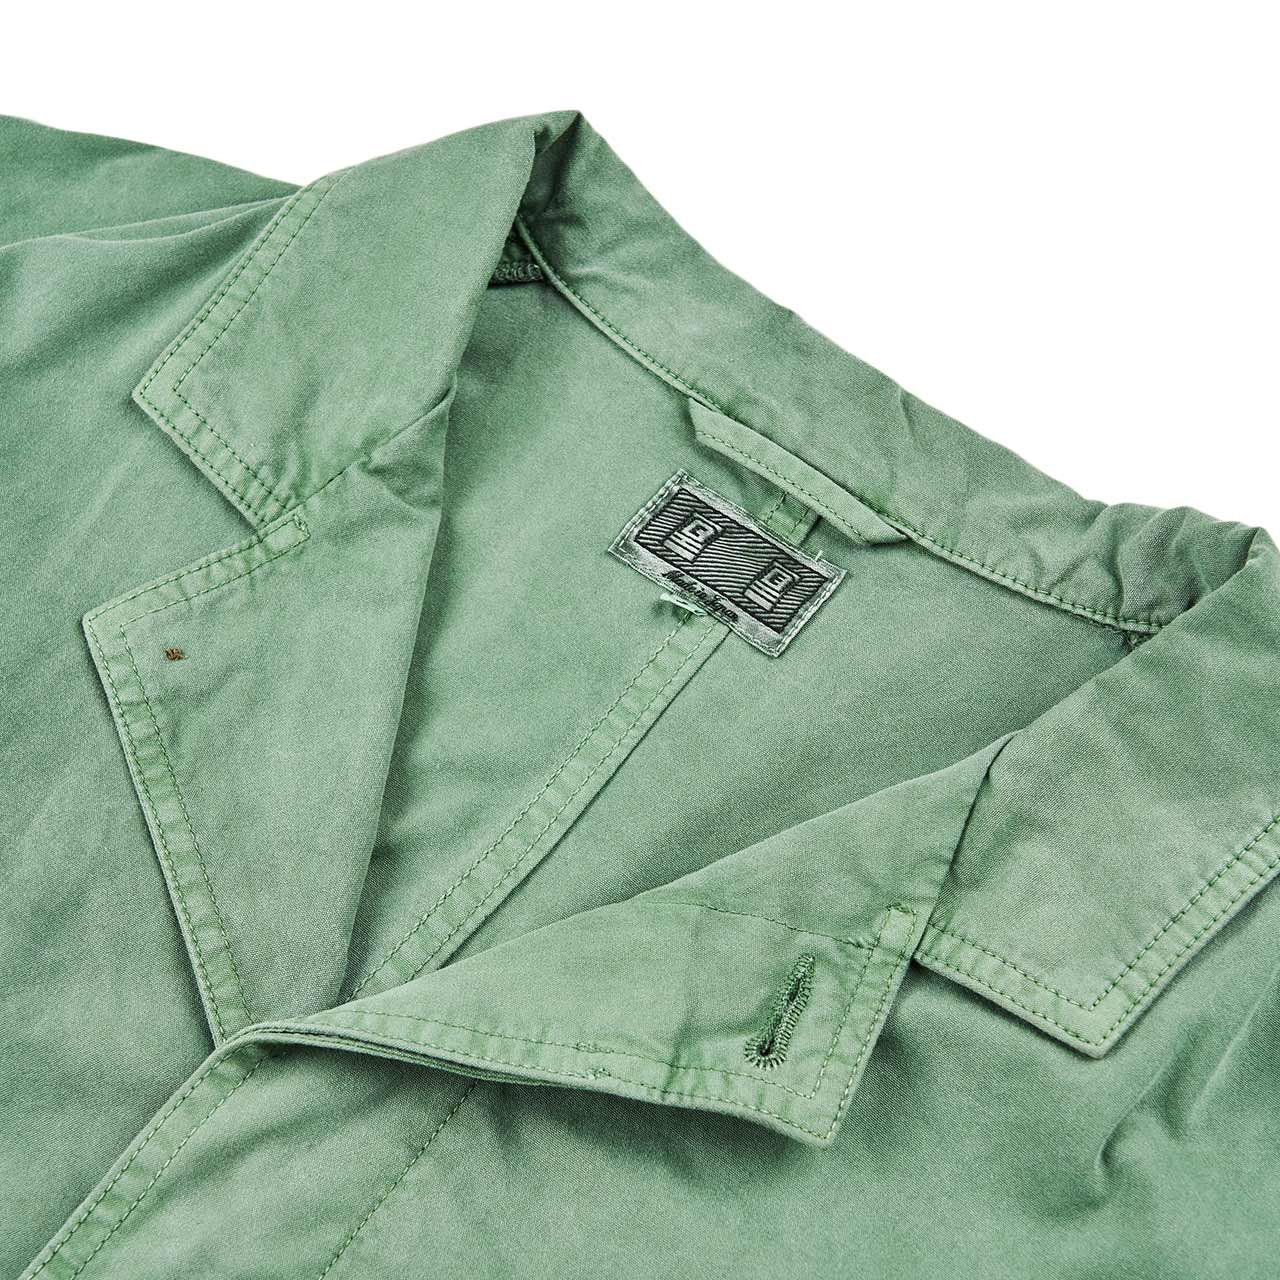 cav empt cav empt overdye interspersed lapel jacket (green)